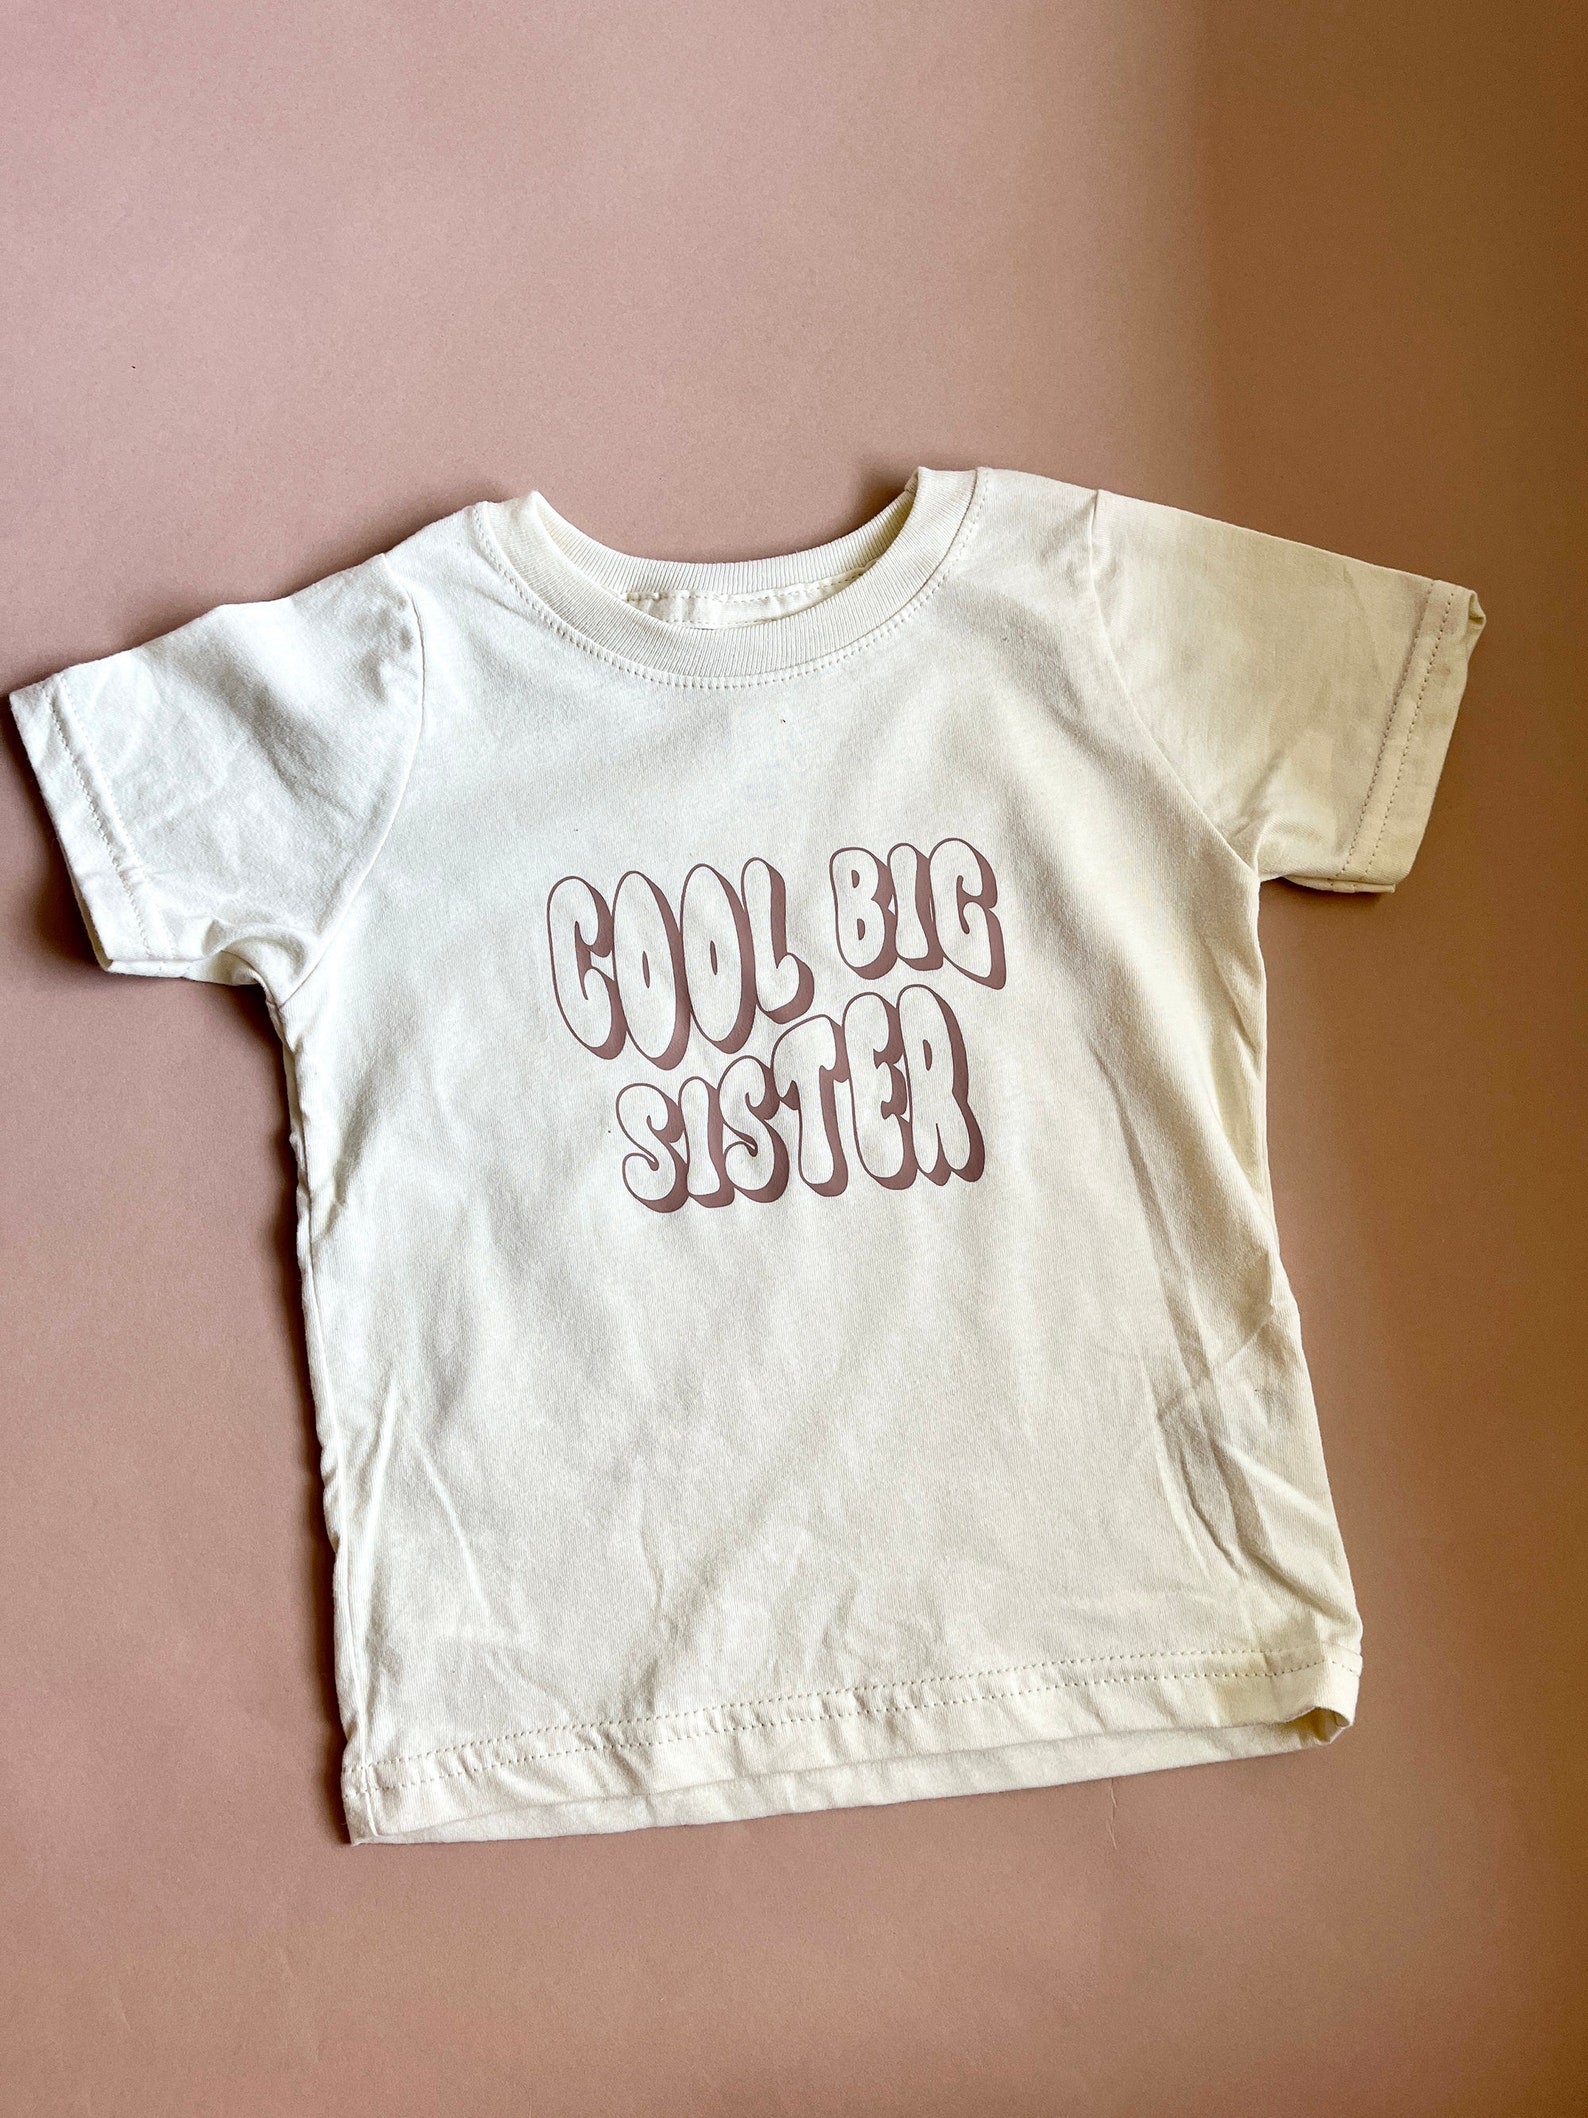 Kitto.Label | Cool Big Sister Shirt